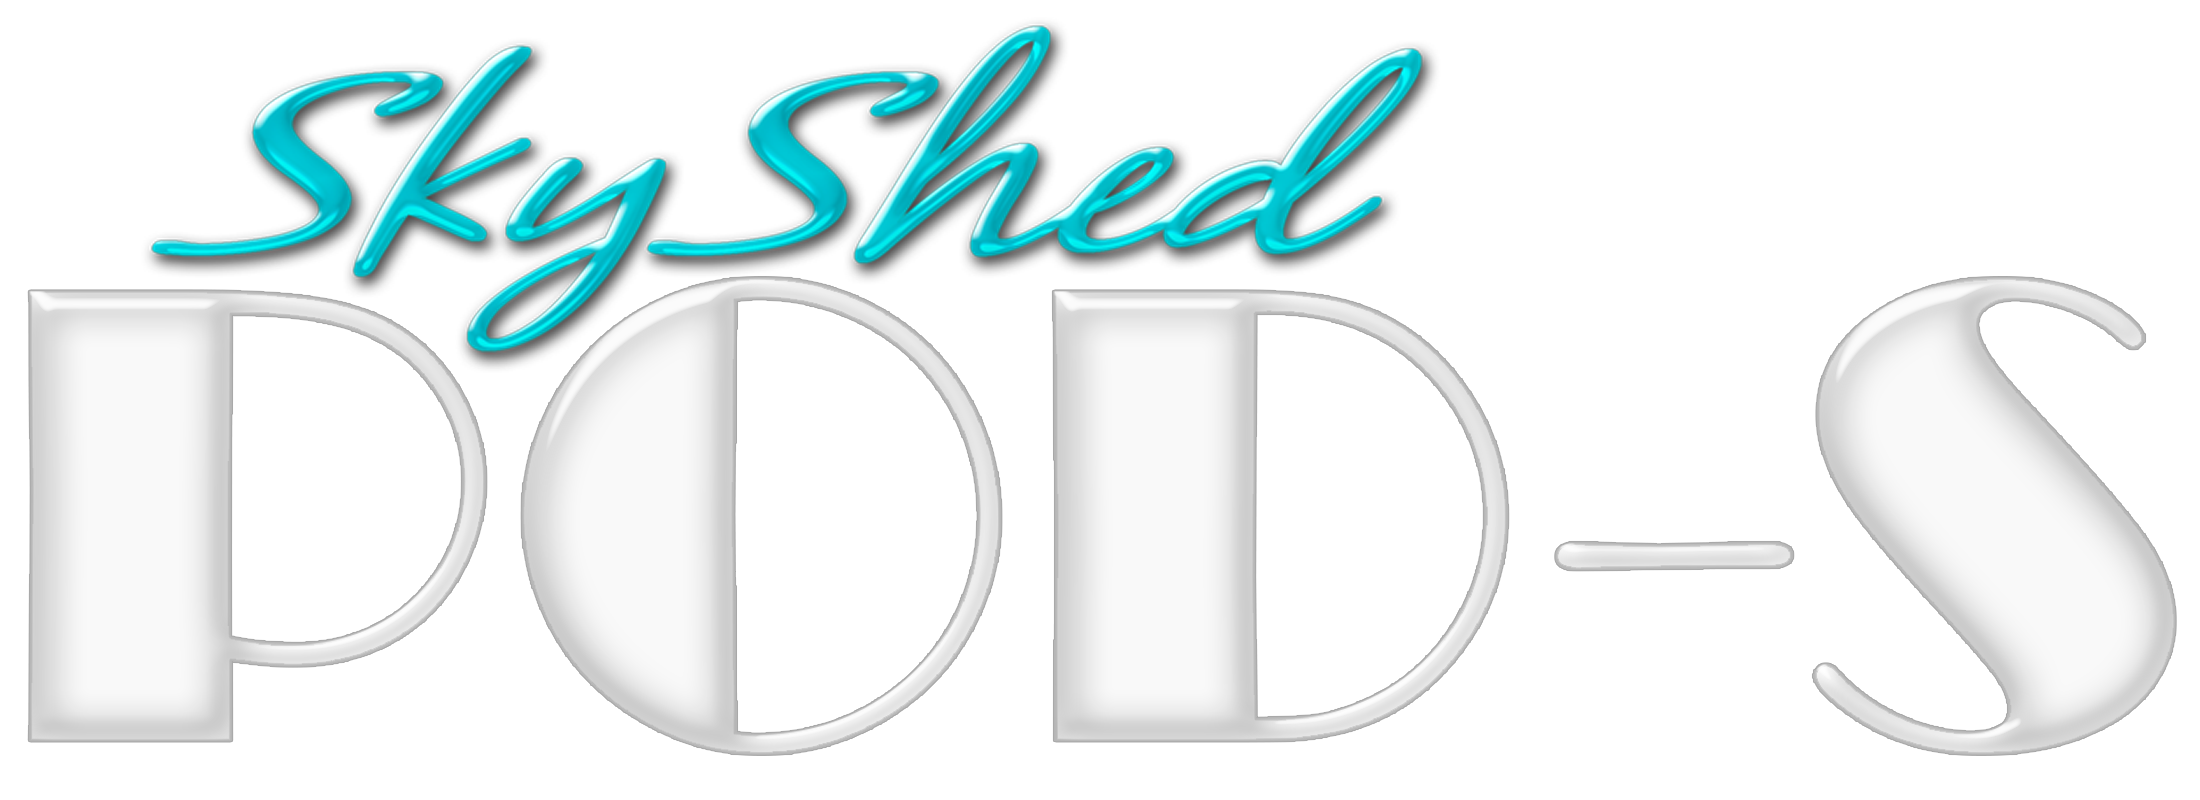 SkyShed POD logo for dome observatories